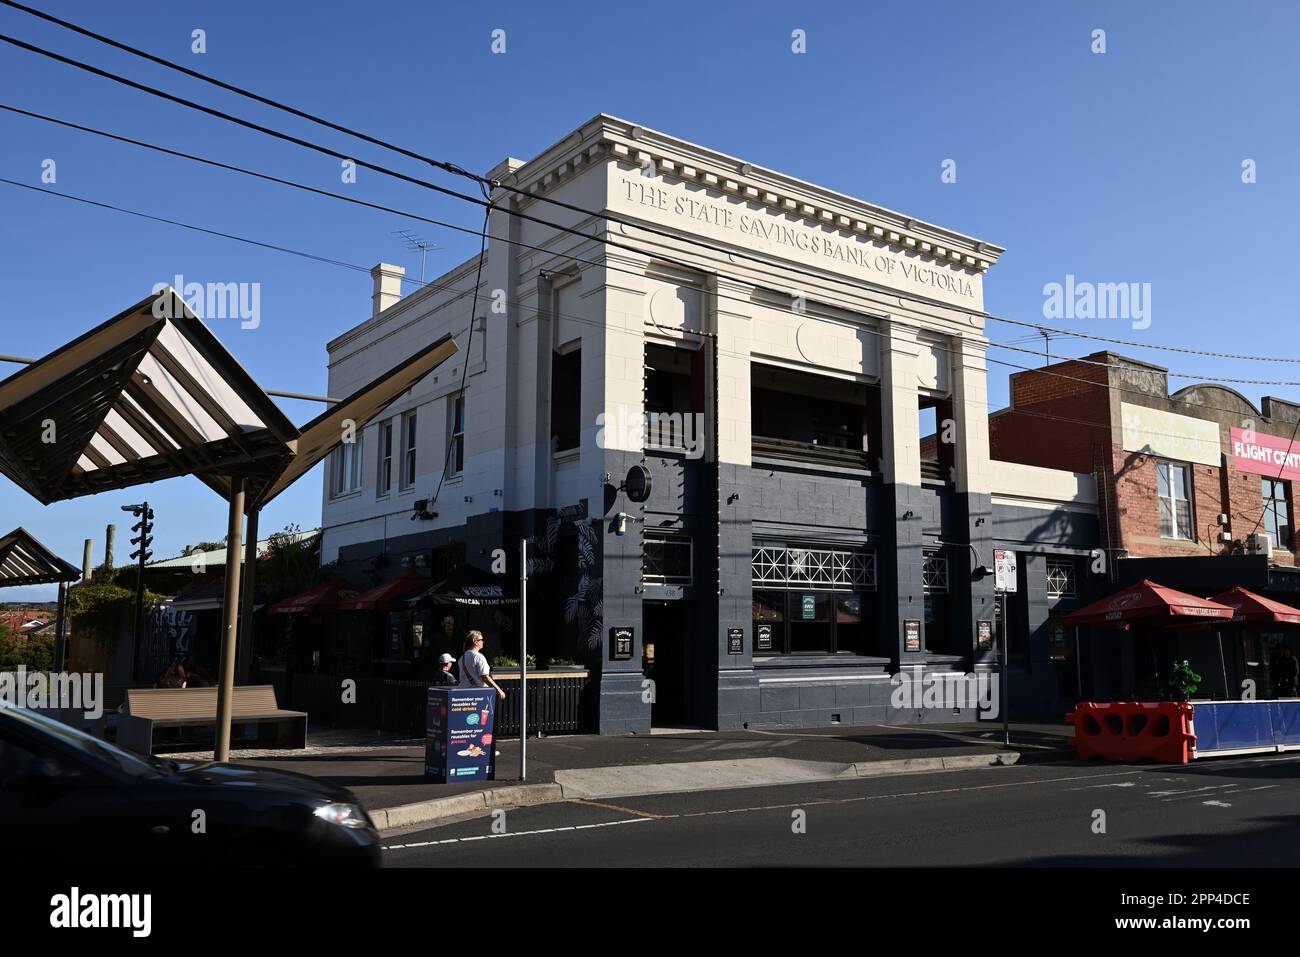 Sonder Bar, sur le chemin Centre, situé dans un édifice du patrimoine, anciennement la State Savings Bank of Victoria Banque D'Images